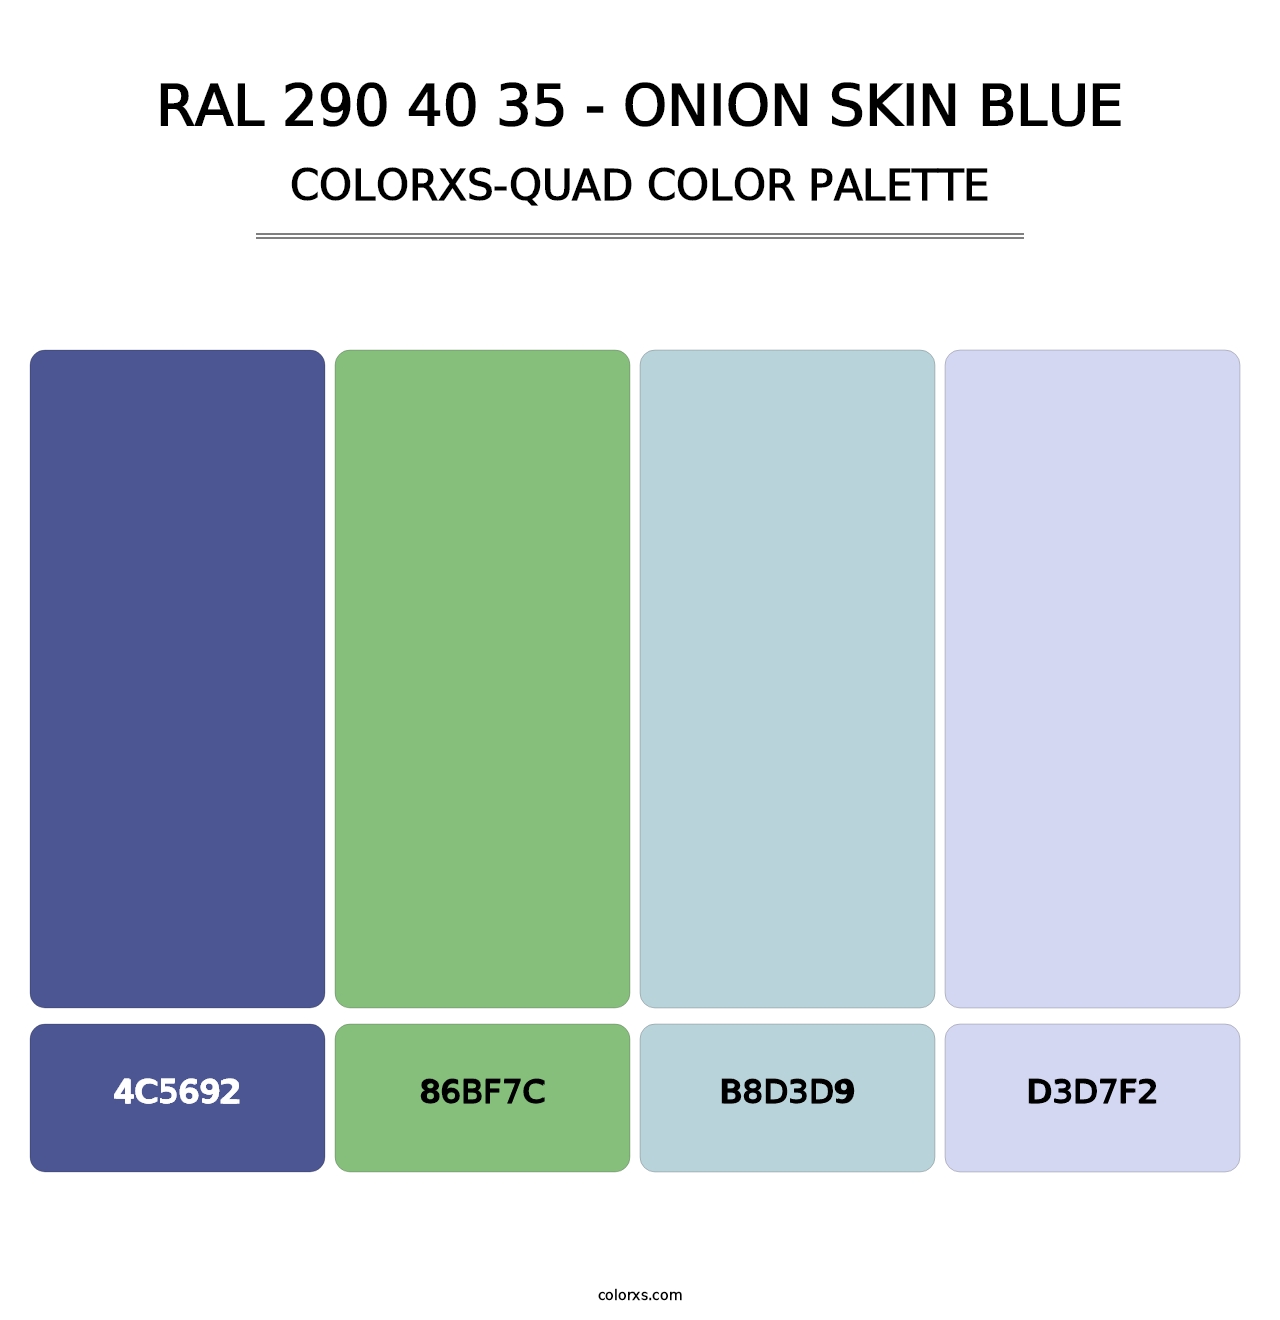 RAL 290 40 35 - Onion Skin Blue - Colorxs Quad Palette